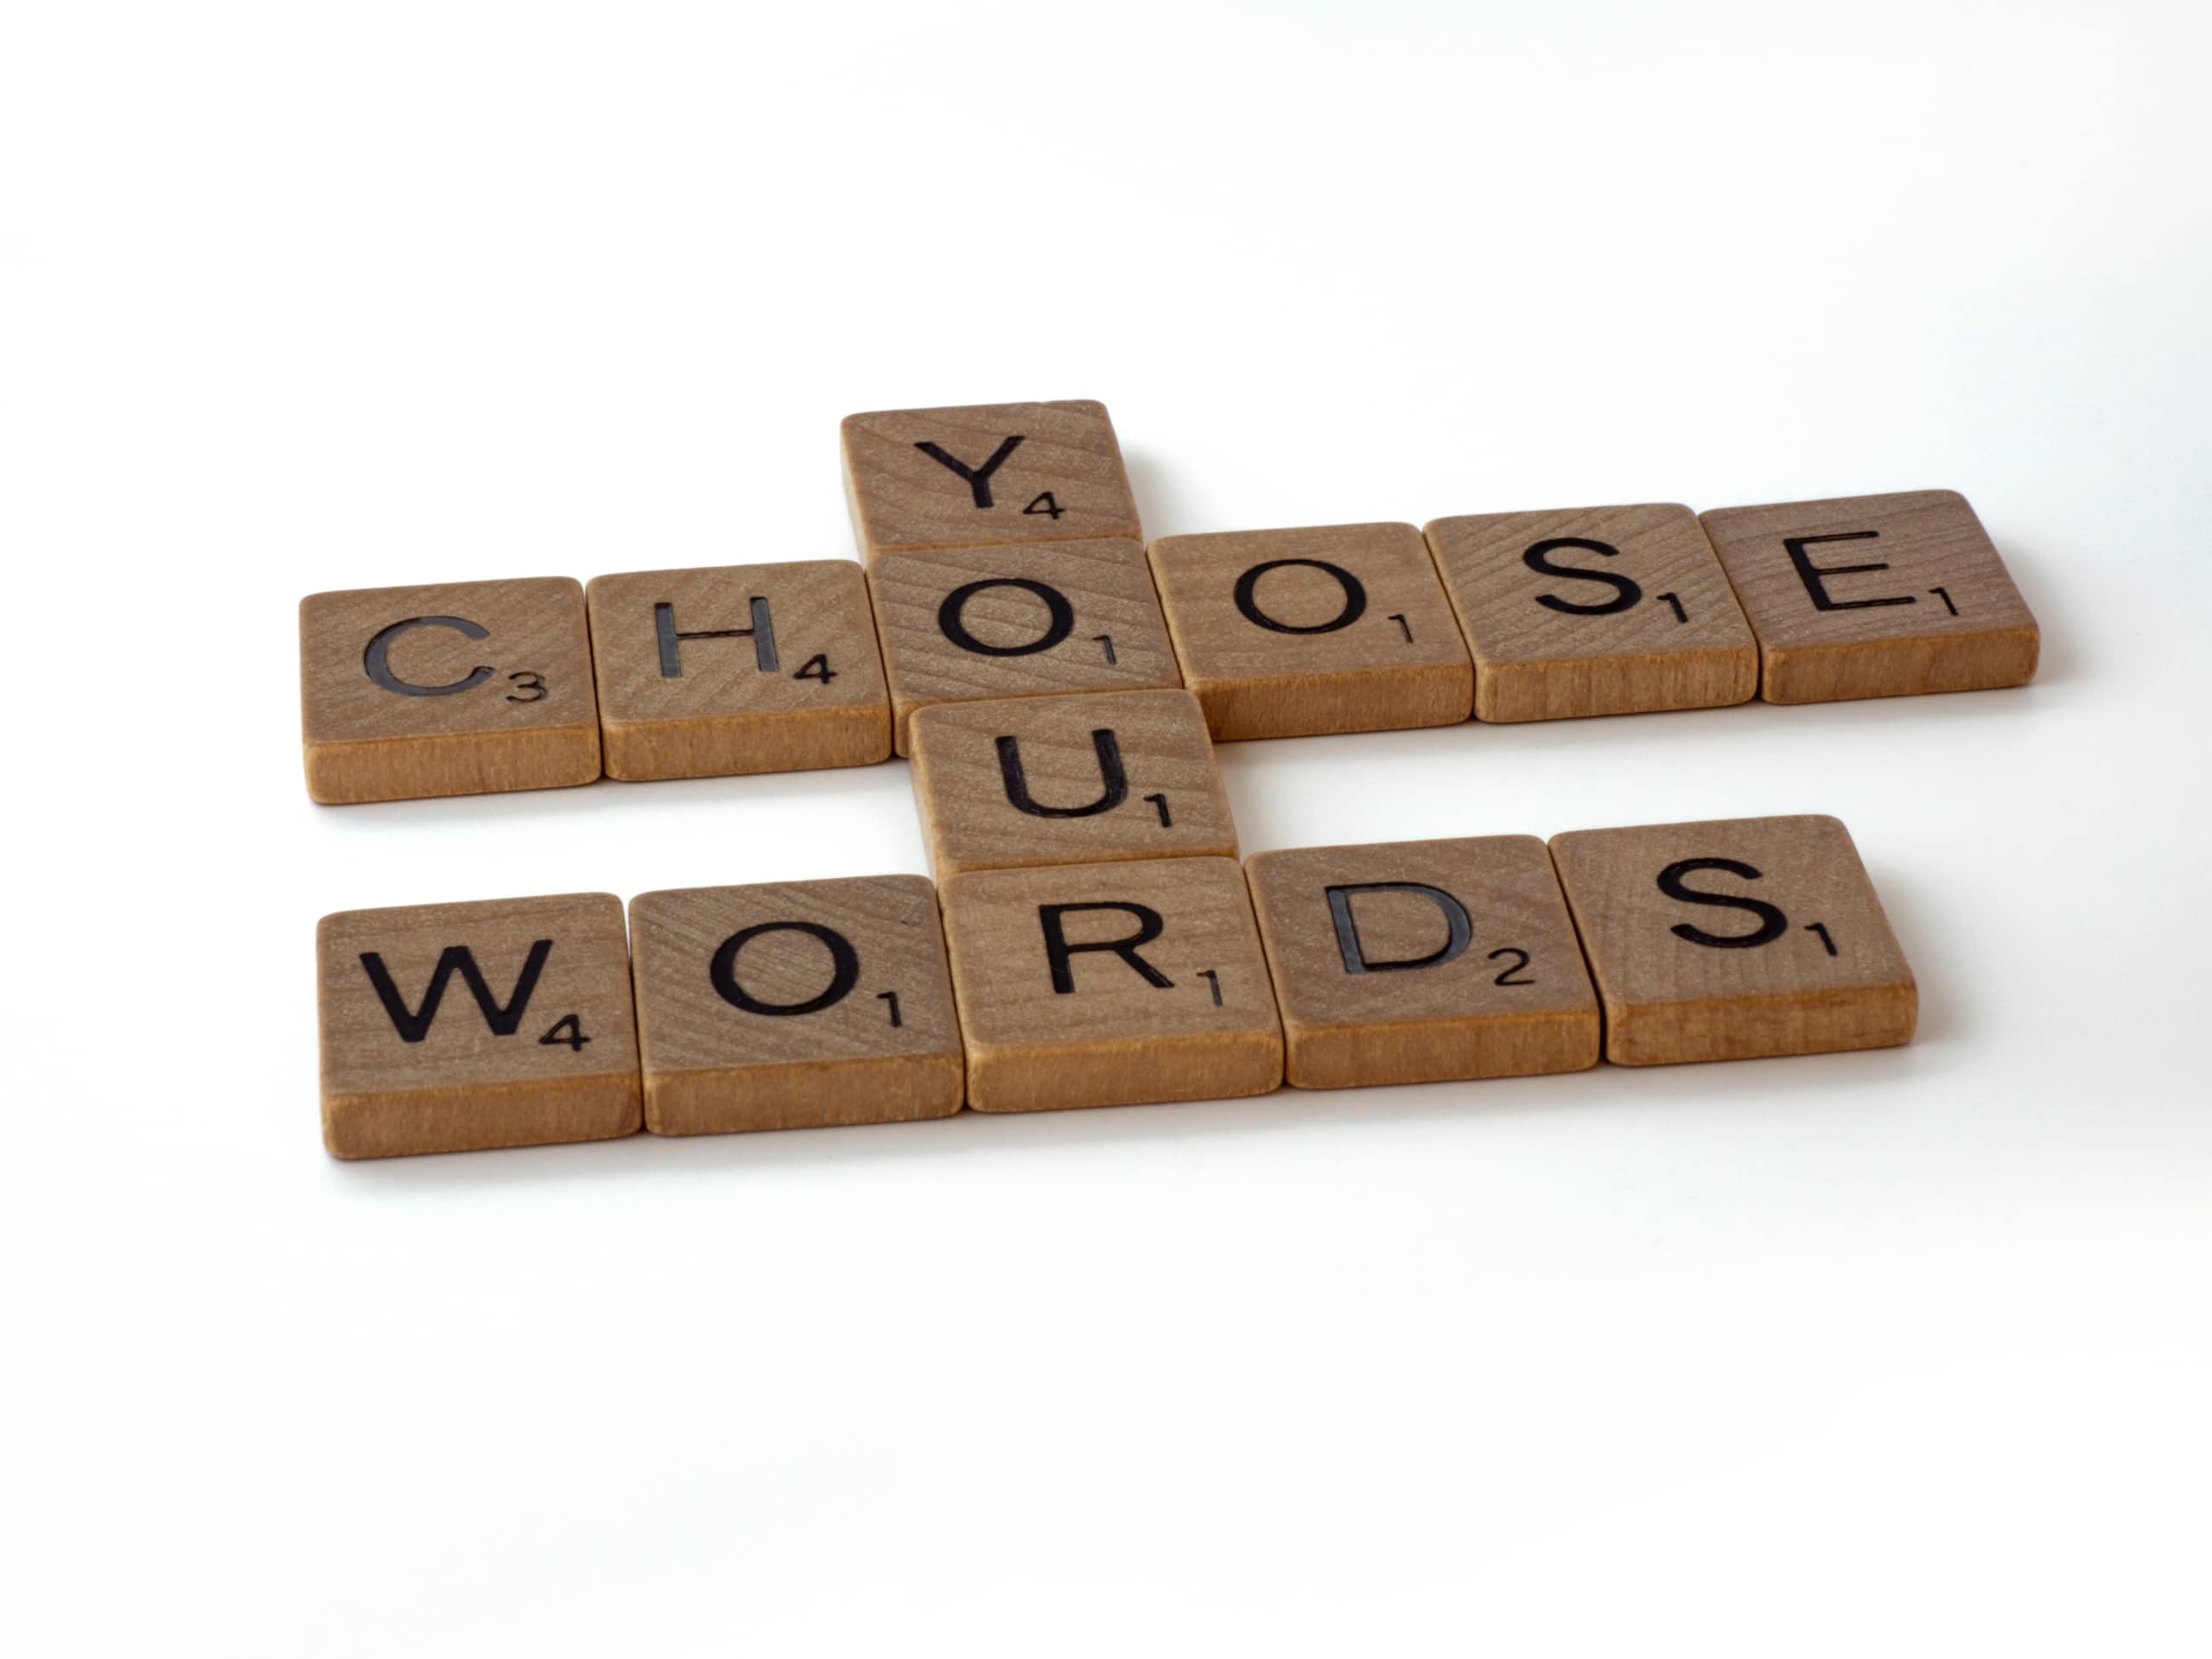 Choisissez vos mots